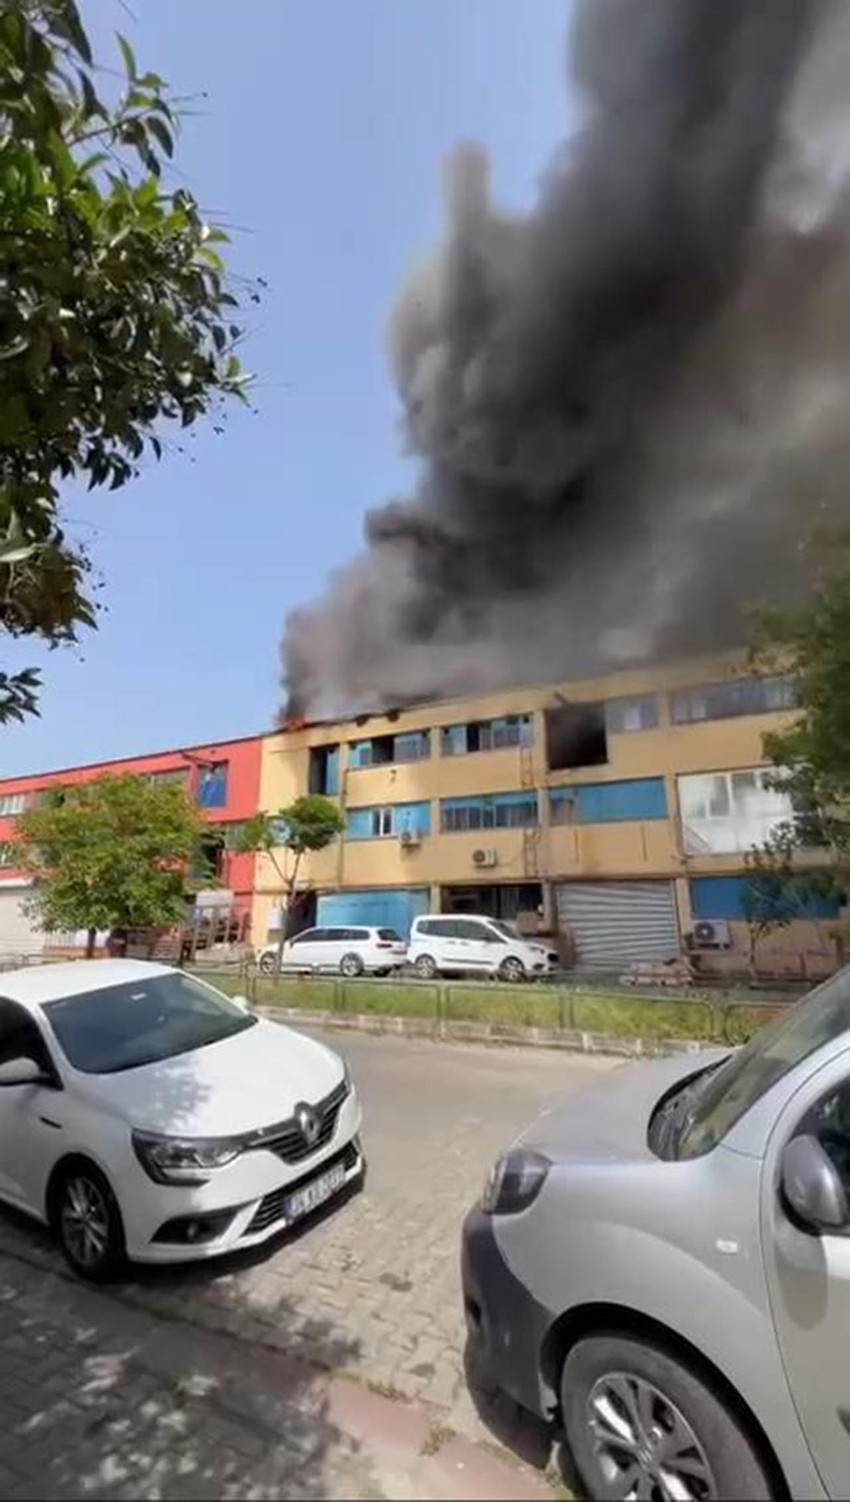 İstanbul Başakşehir'de İSTEKS Sanayi Sitesi'nde yangın çıktı. Yangın ekiplerin müdahalesiyle kontrol altına alındı.